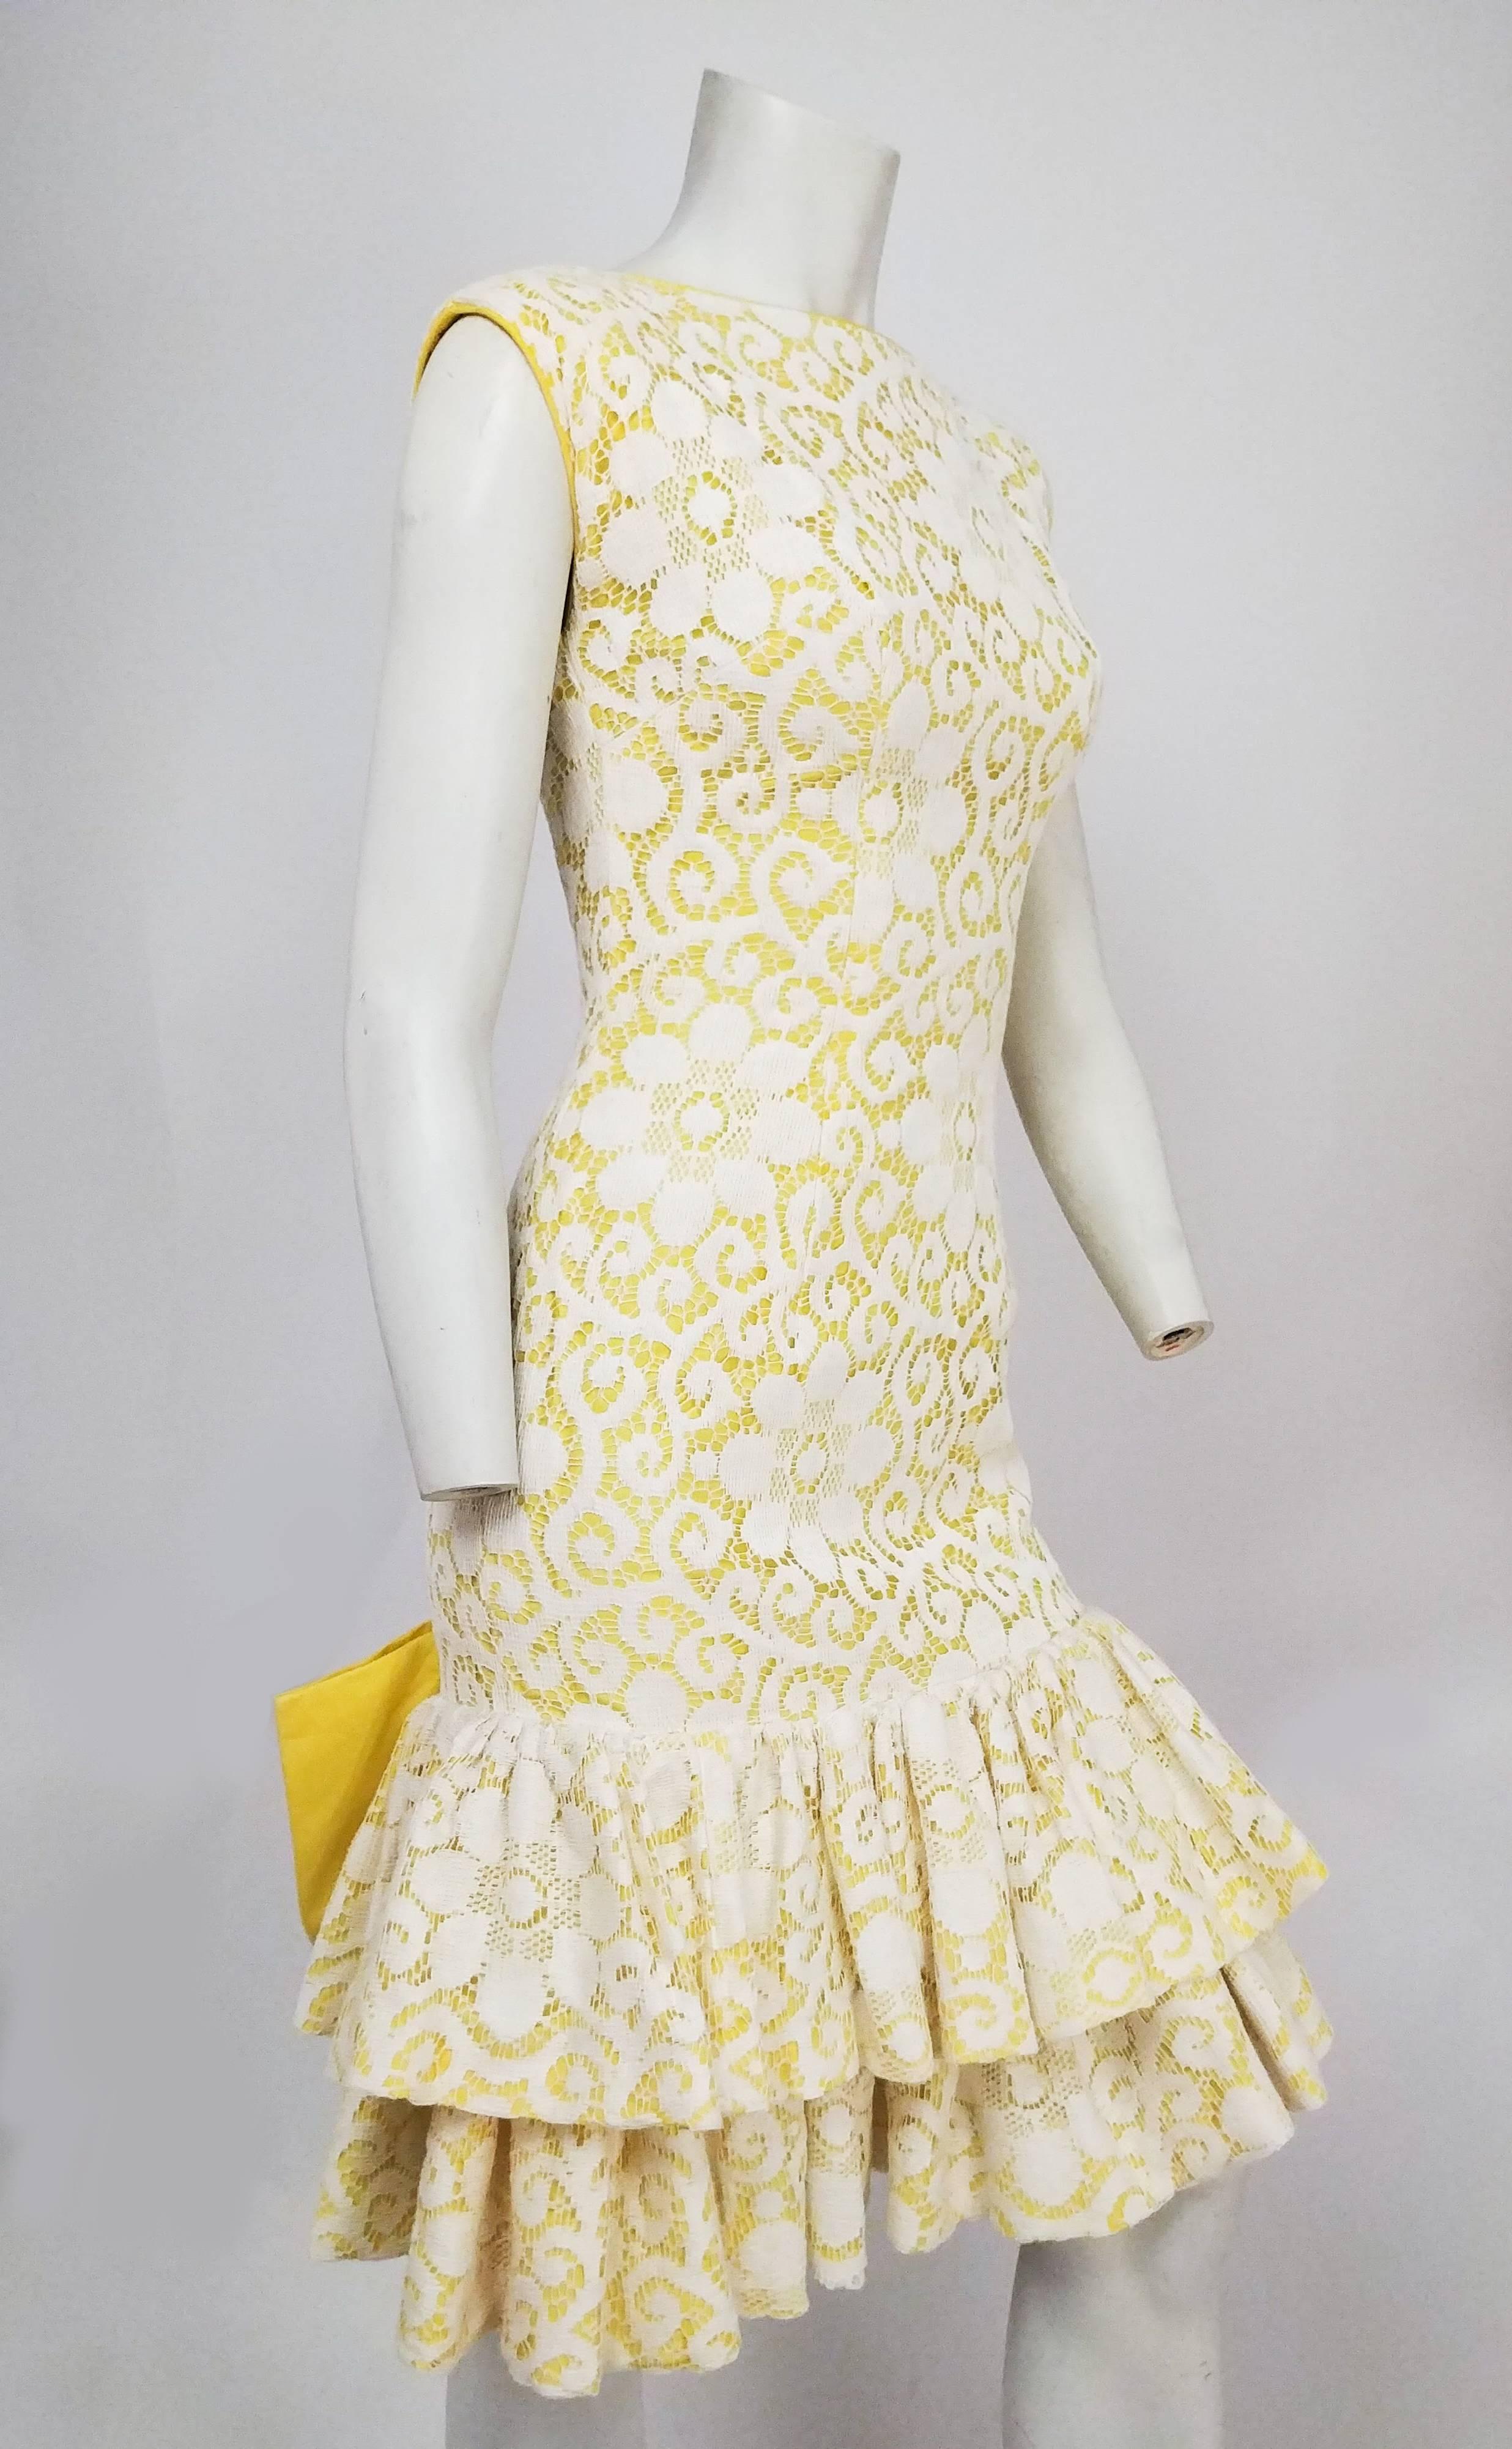 1960er Jahre Lilli Diamond Gelb Drop-waist Ruffle Cocktailkleid w / Lace Overlay. Gelbes Unterteil mit weißem Spitzenüberzug, doppeltem Rüschensaum und großer Schleife am Rücken. Tief ausgeschnittener Rücken. 